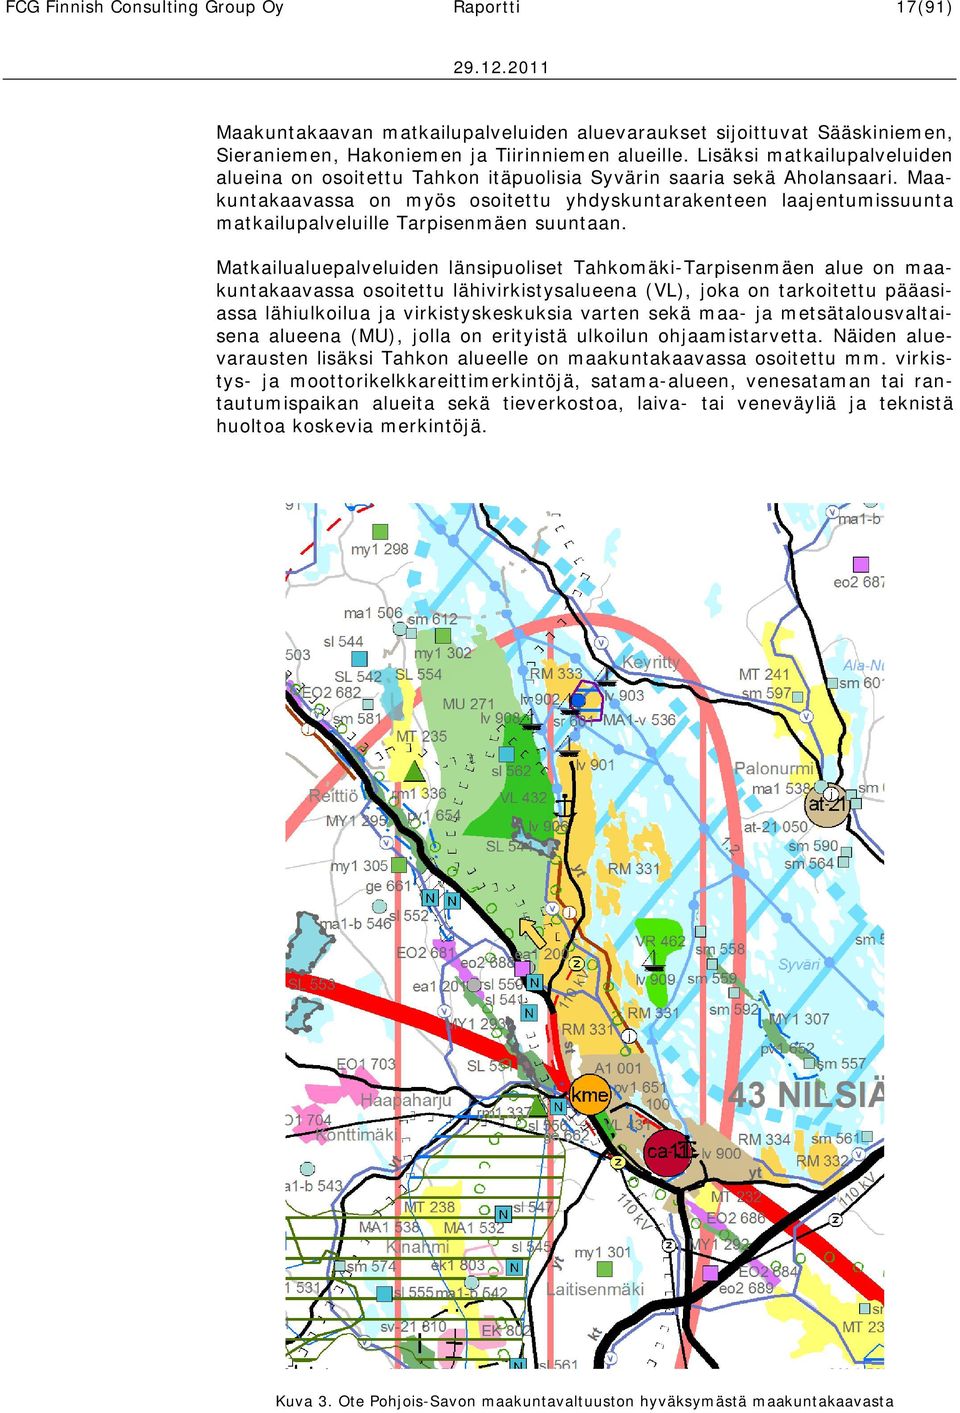 Maakuntakaavassa on myös osoitettu yhdyskuntarakenteen laajentumissuunta matkailupalveluille Tarpisenmäen suuntaan.